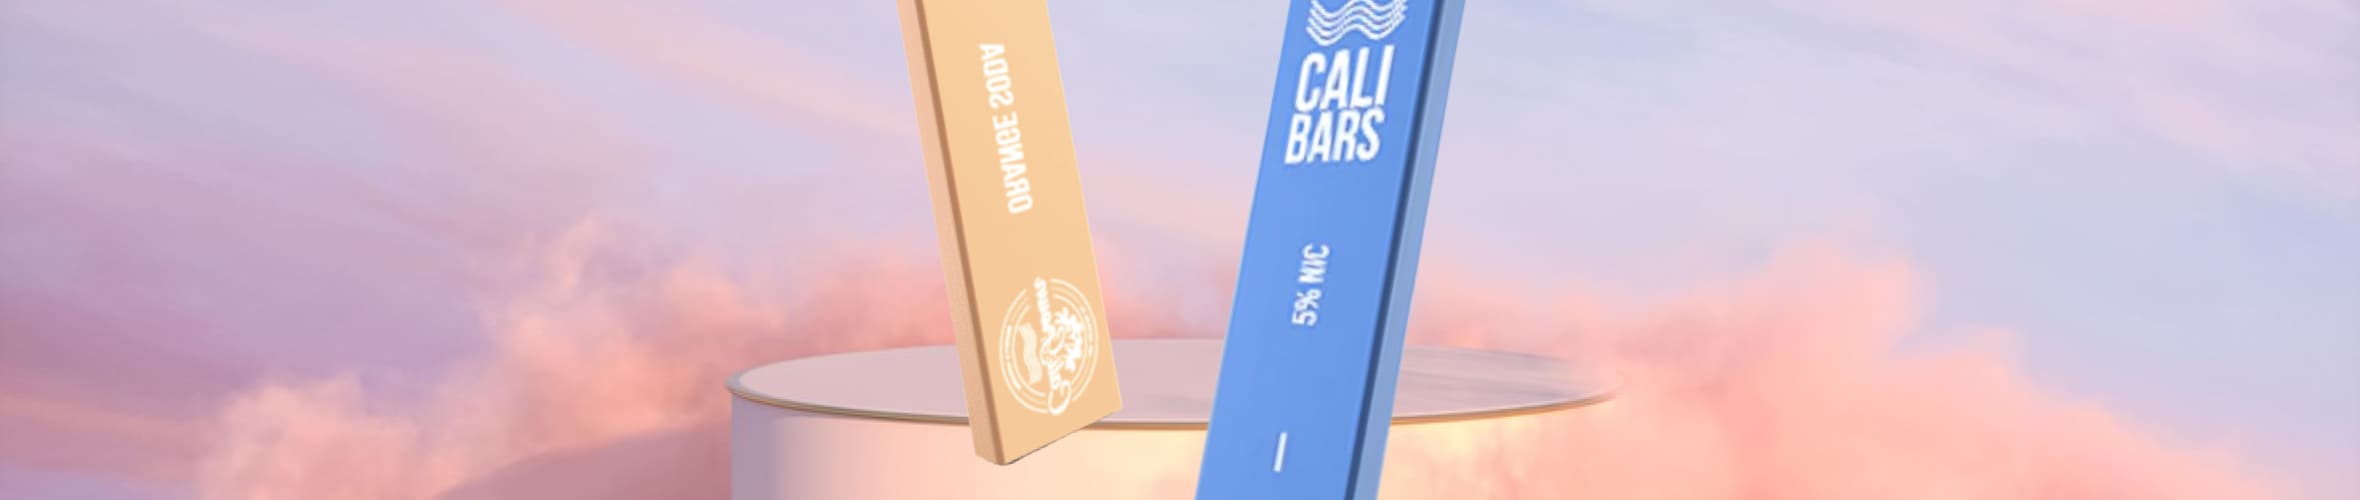 Cali Bars Vape Review